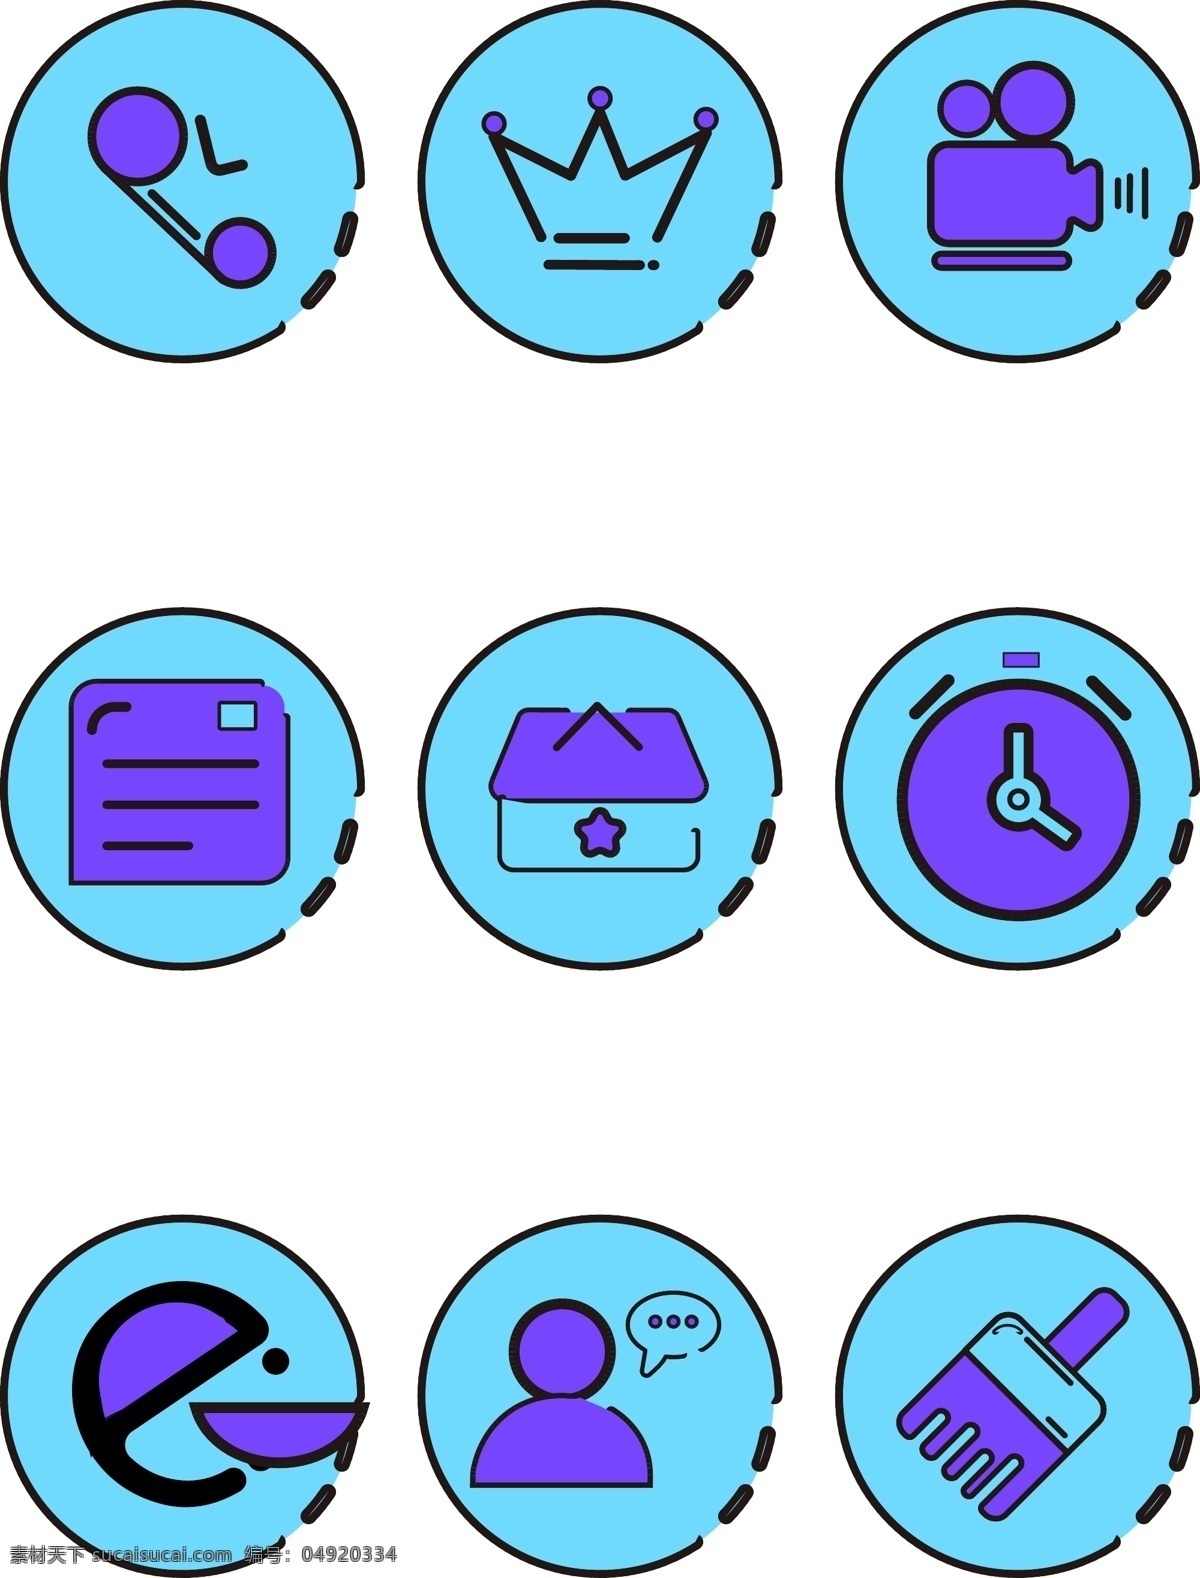 手机 主题 蓝色 卡通 app 小 图标素材 小图标 app手机 ai素材